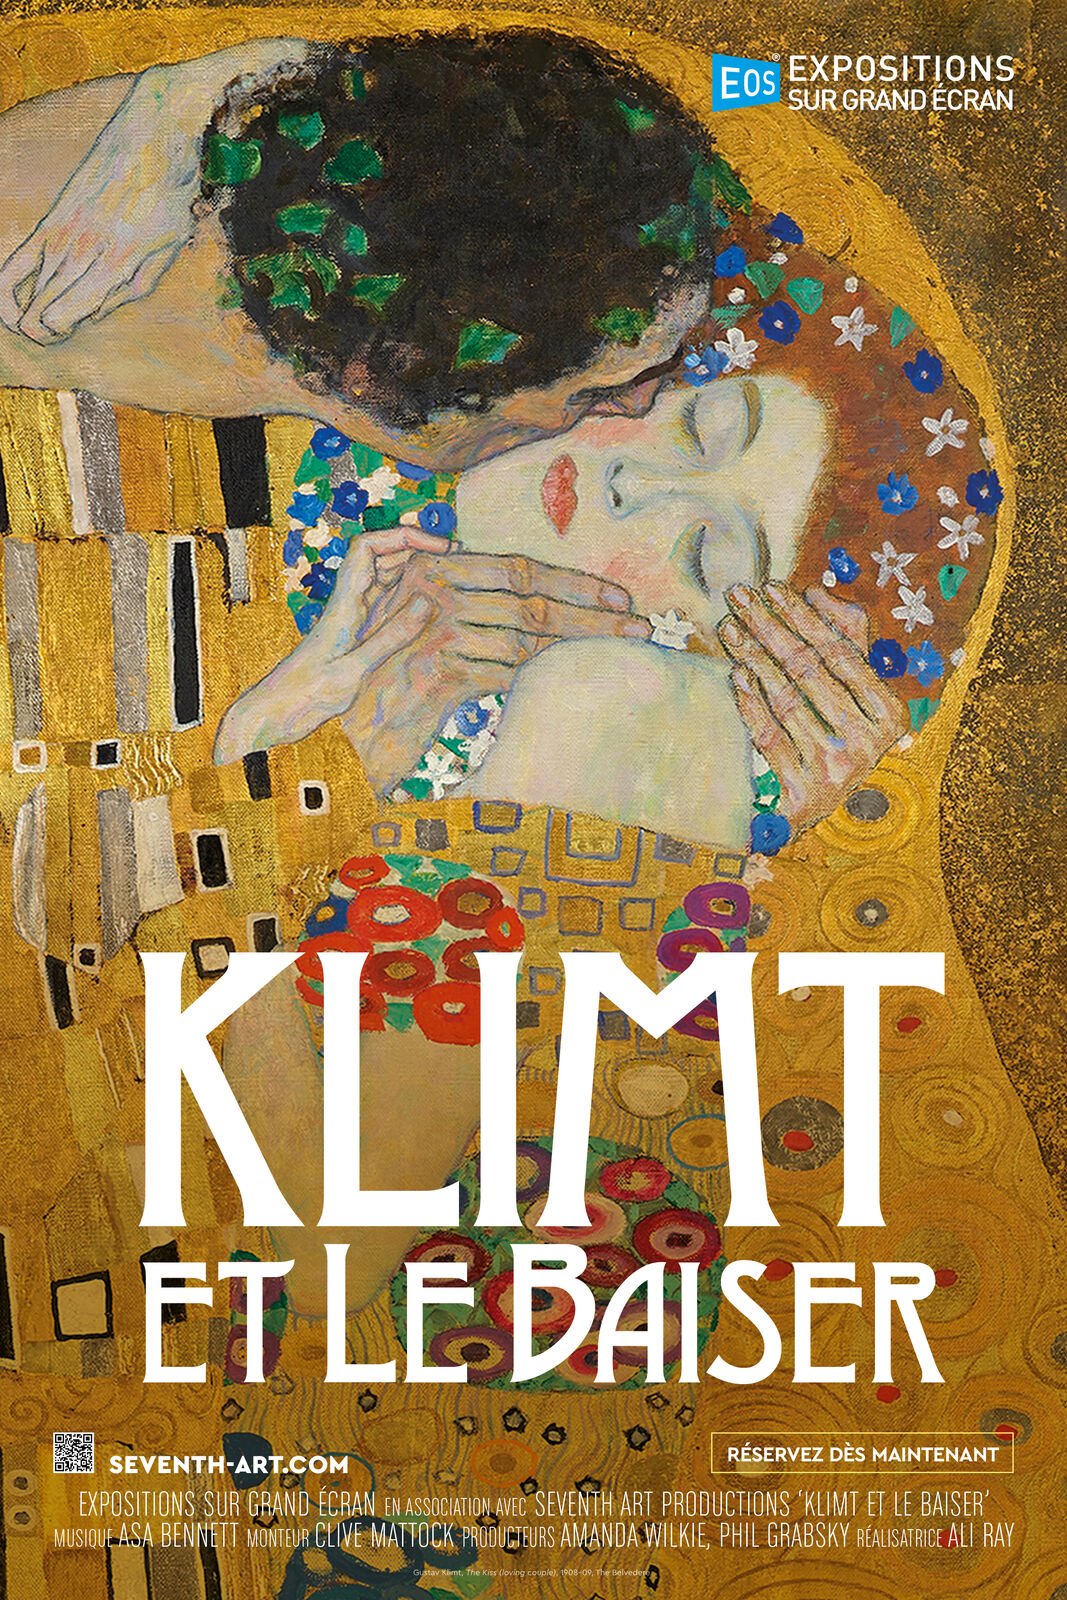 Exposição com réplicas de obras de Gustav Klimt entra na última semana de  exibição - Prefeitura de Curitiba